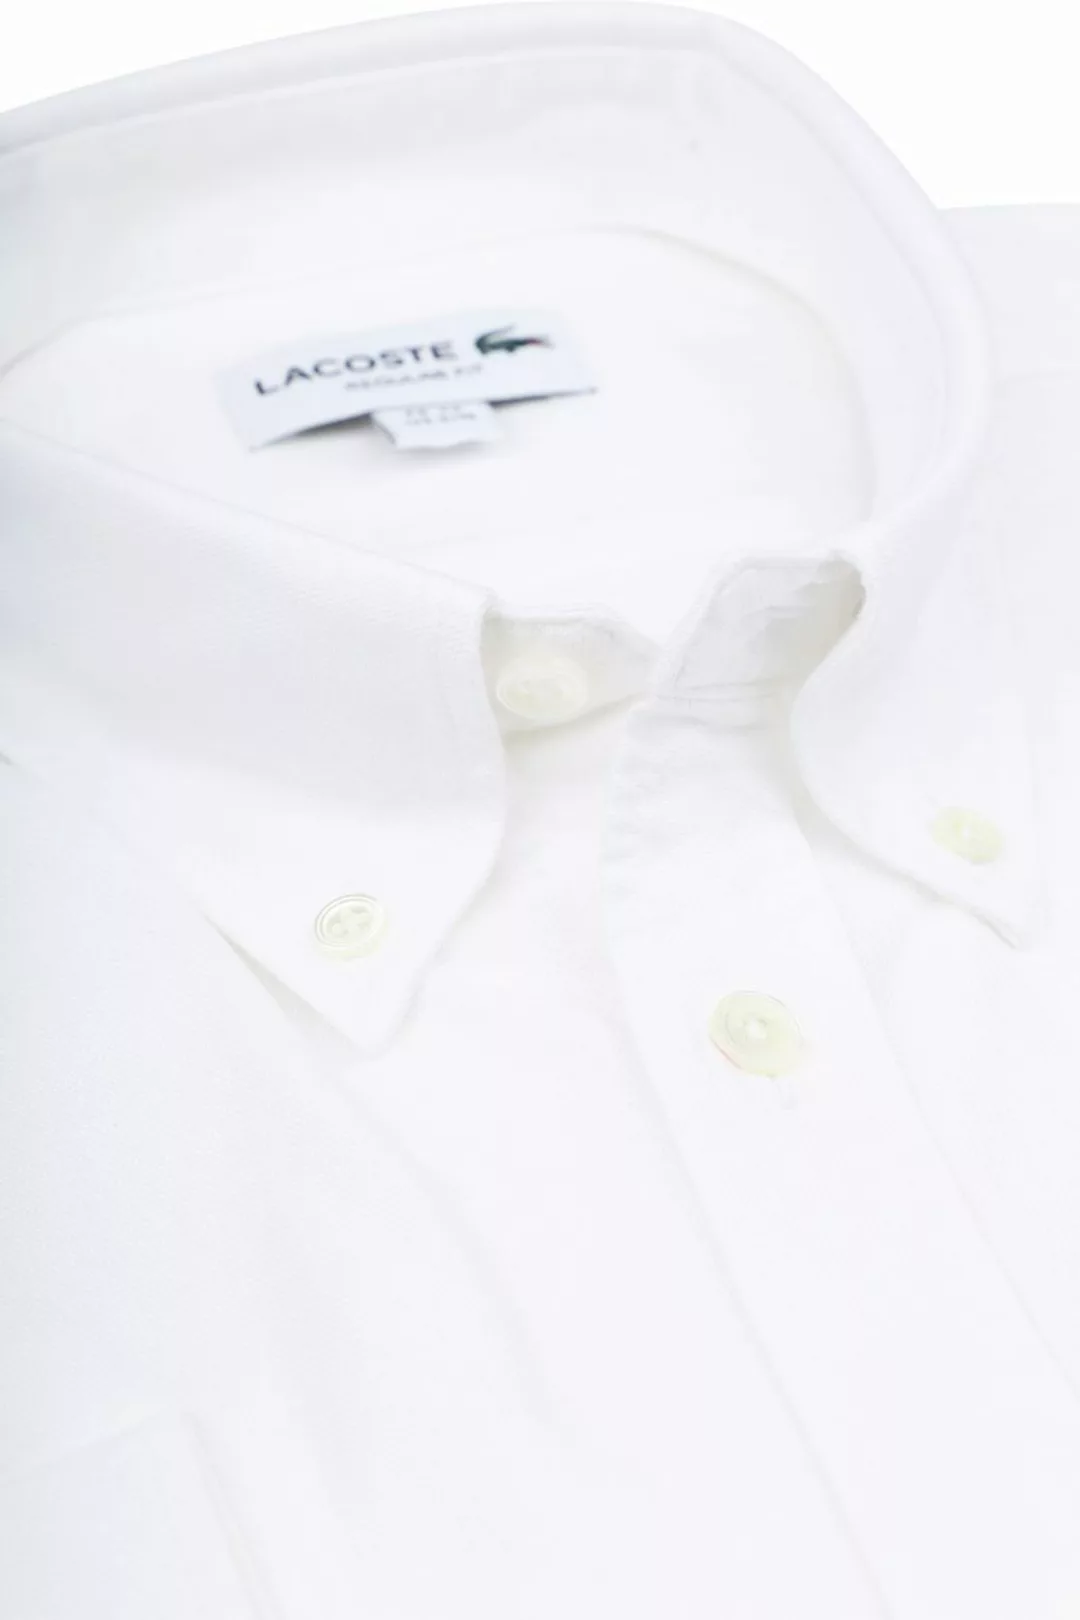 Lacoste Oxford Hemd Weiß - Größe 40 günstig online kaufen